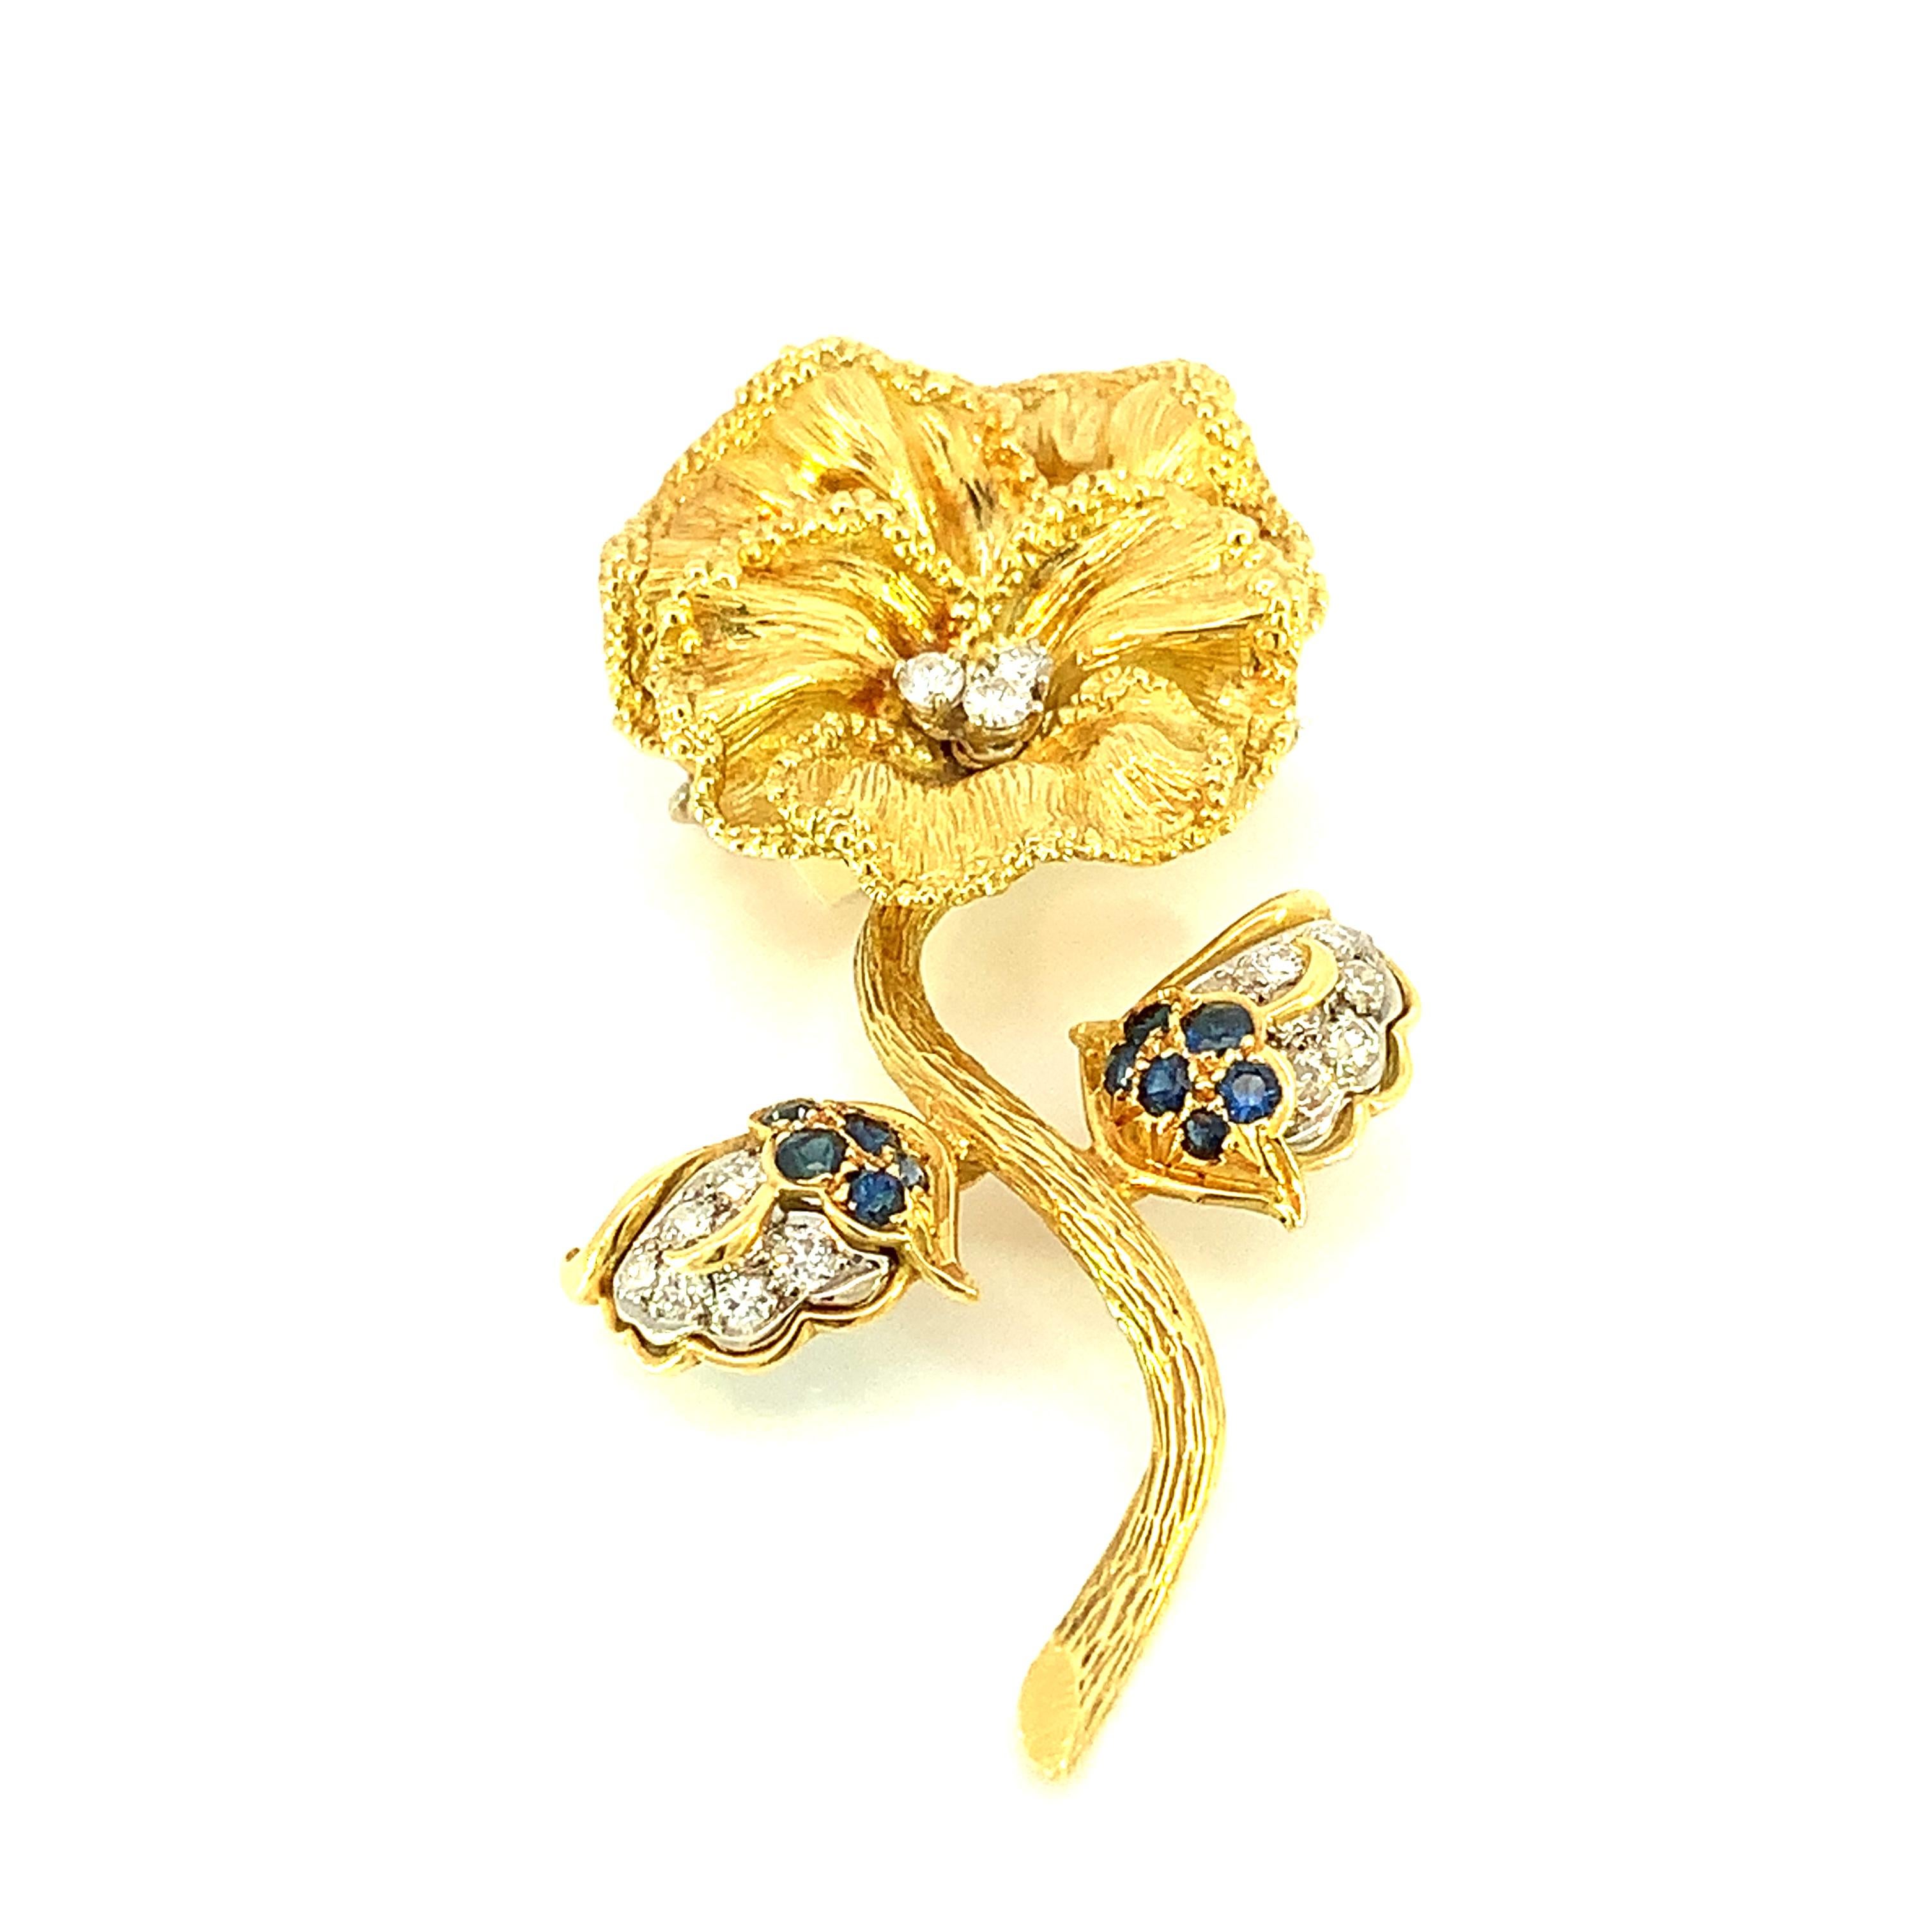 Nous vous présentons notre exquise épingle à fleur en saphir bleu et diamant, un bijou finement ouvragé qui marie l'élégance intemporelle des saphirs bleus à l'éclat des diamants, le tout serti dans de l'or jaune 18 carats lustré. Cette épingle à